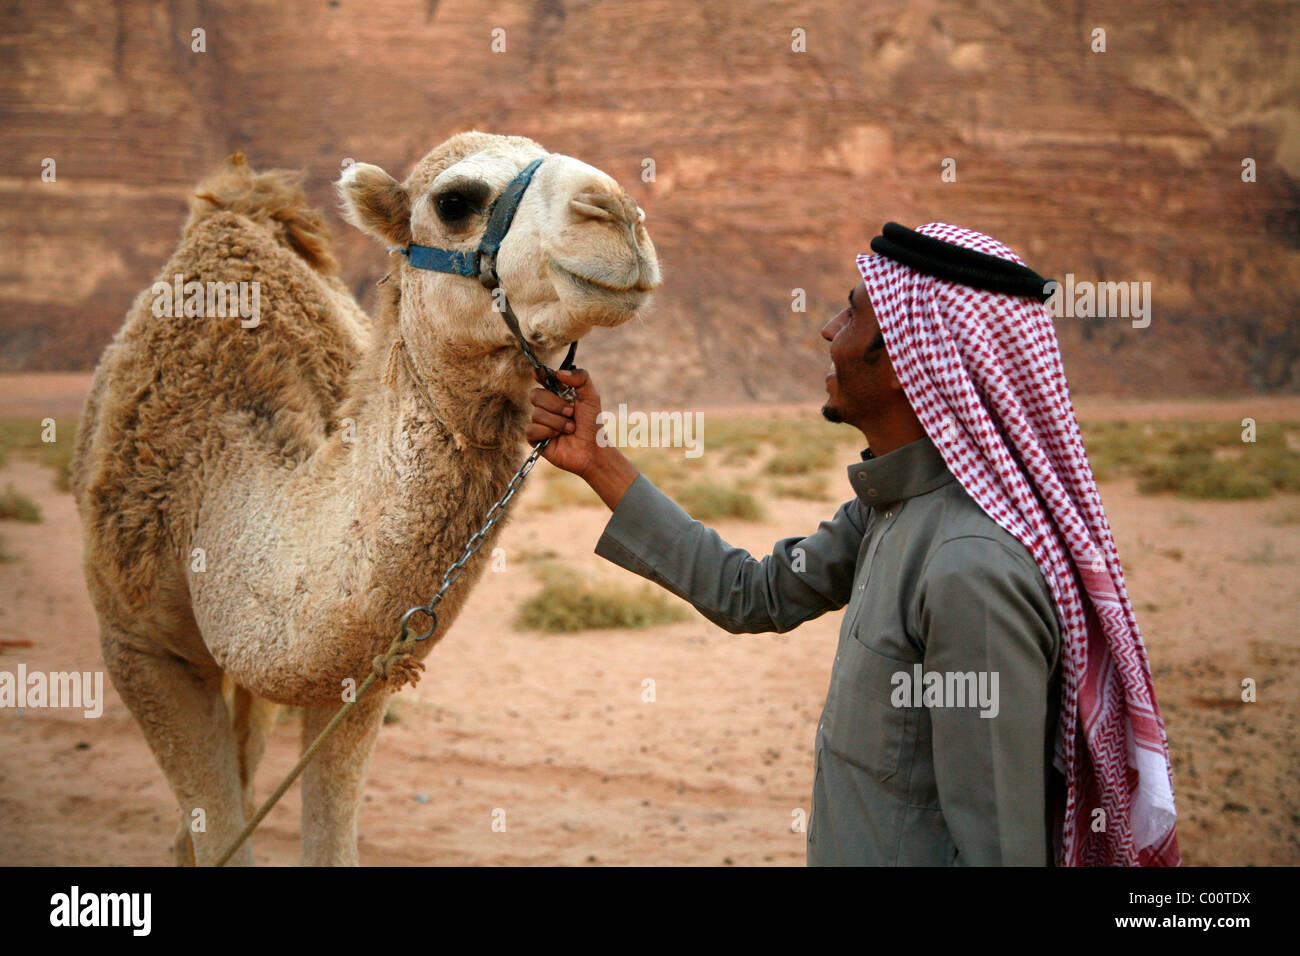 Hombre beduino y su camello, Wadi Rum, Jordania. Foto de stock